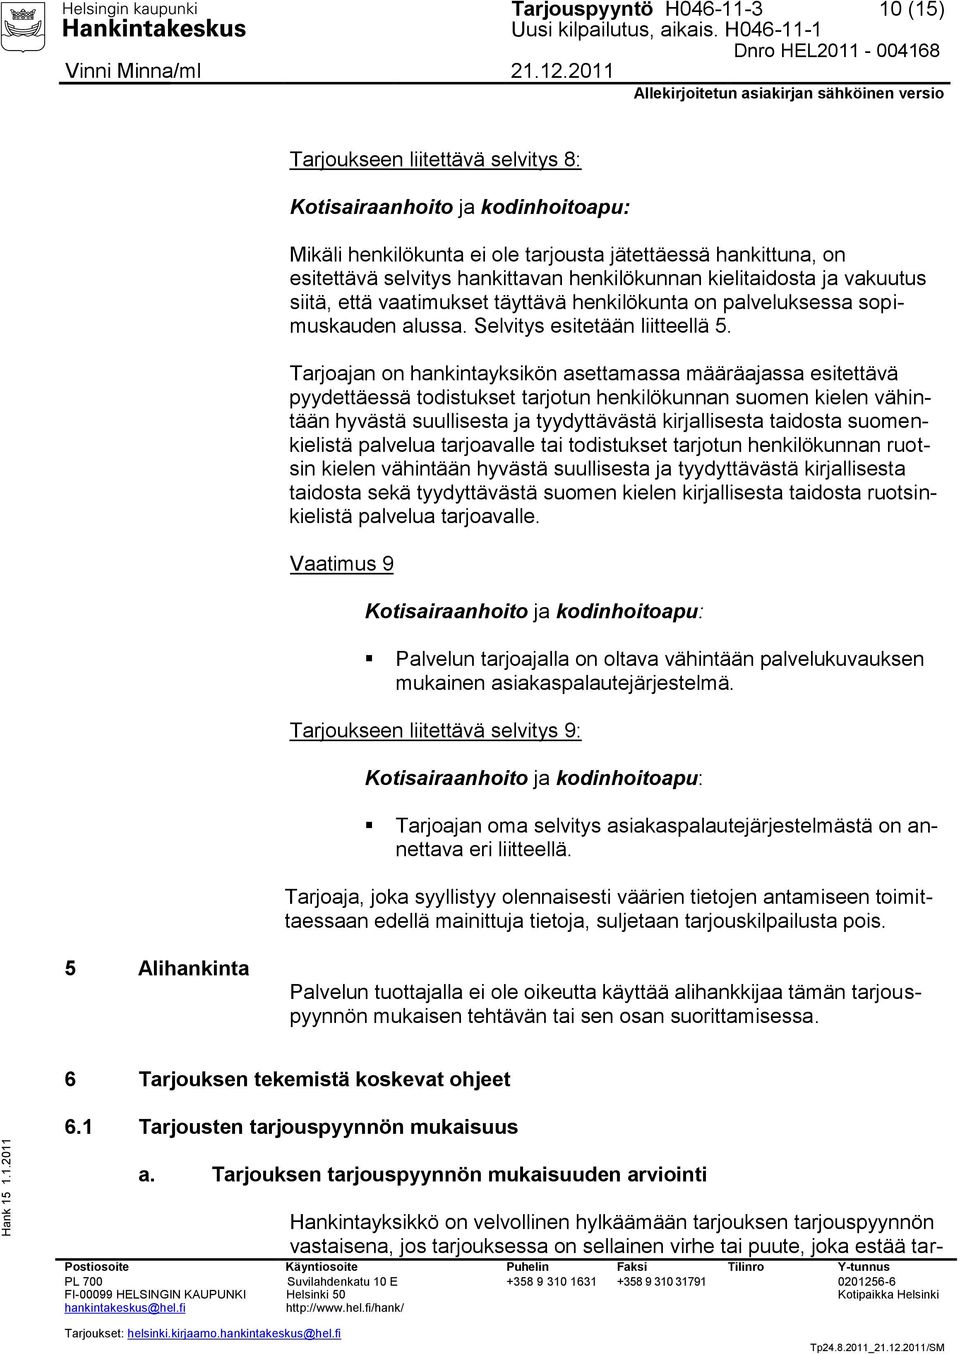 Tarjoajan on hankintayksikön asettamassa määräajassa esitettävä pyydettäessä todistukset tarjotun henkilökunnan suomen kielen vähintään hyvästä suullisesta ja tyydyttävästä kirjallisesta taidosta